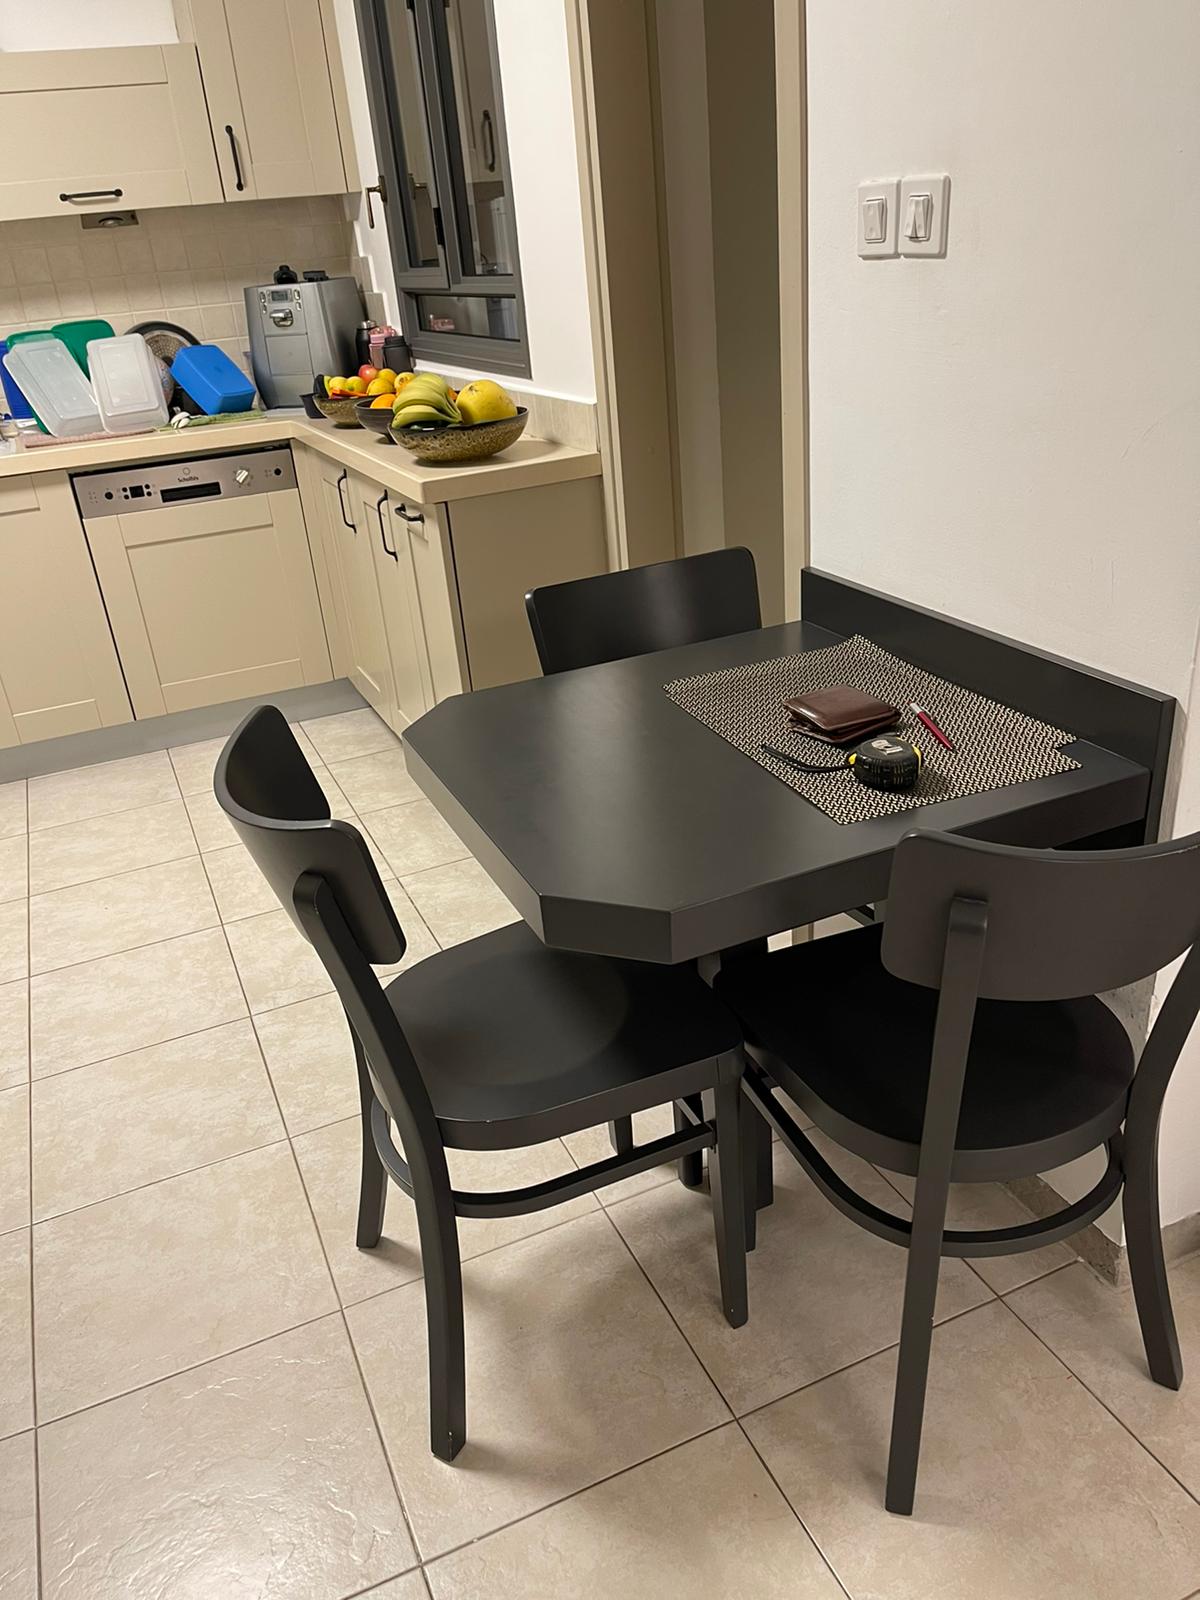 תמונה 3 ,שולחן דסק למטבח למכירה במודיעיןמכביםרעות ריהוט  שולחנות